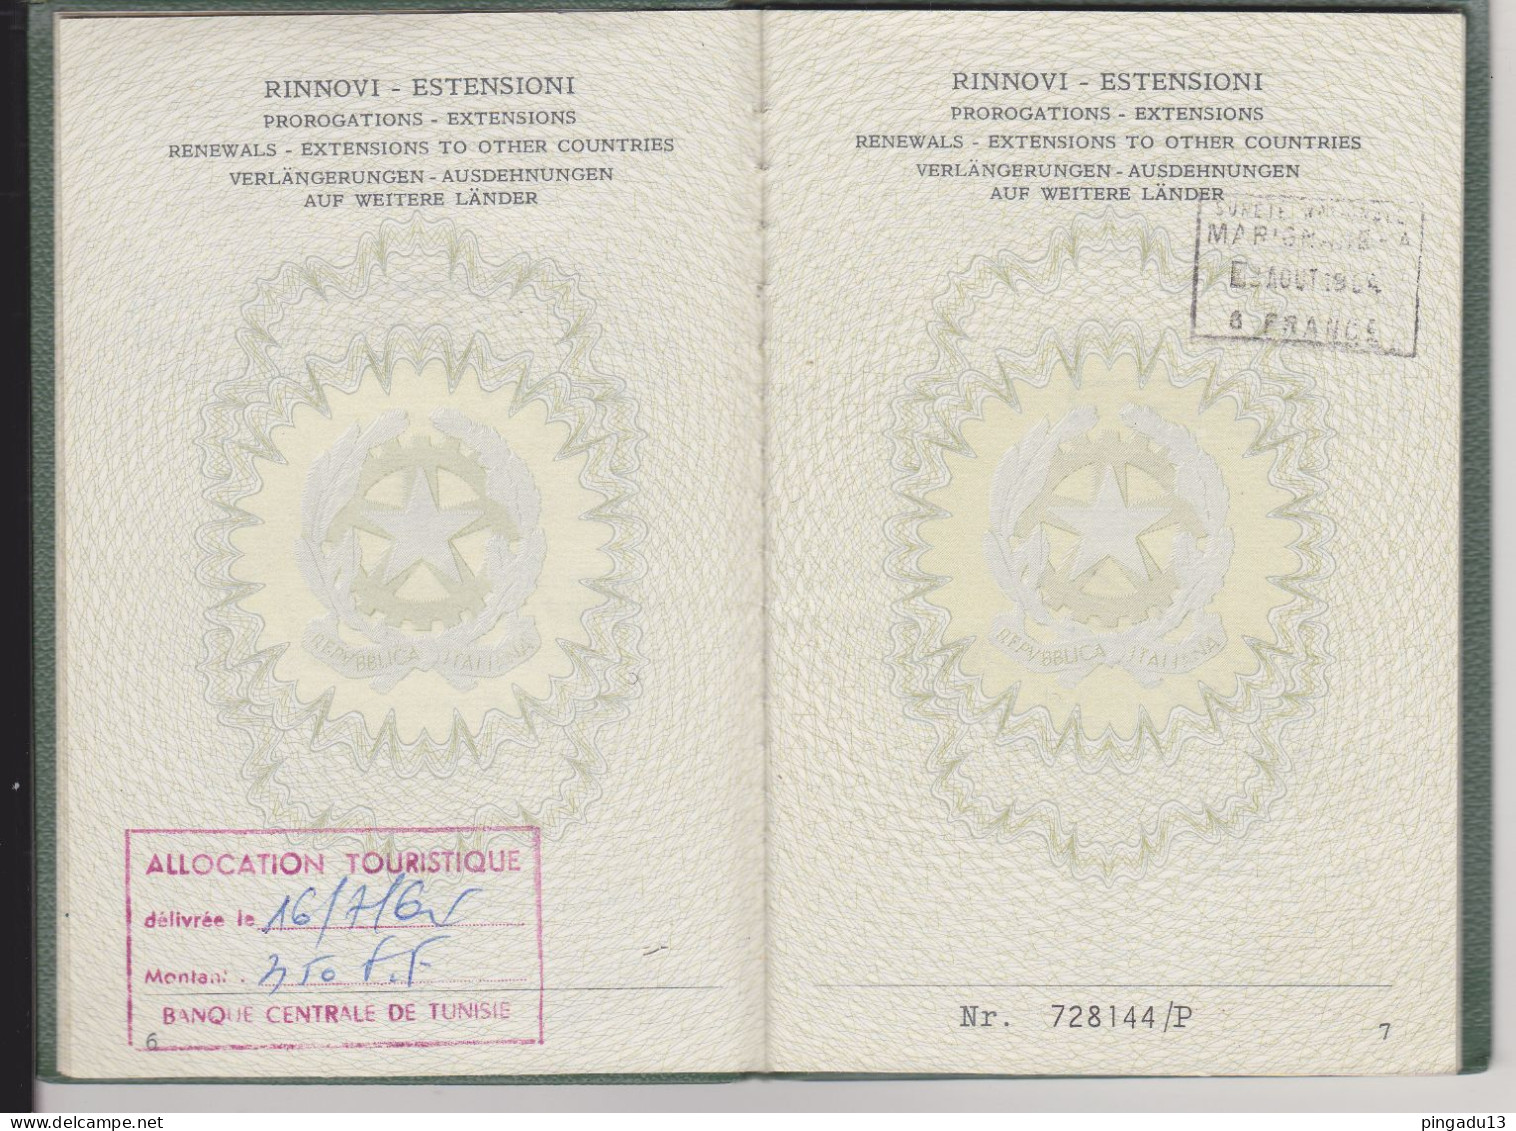 Passaporto Residente in Tunisia Marca consolare gratuita Concessione gratuita del passaporto 14 mai 1963 Tunis